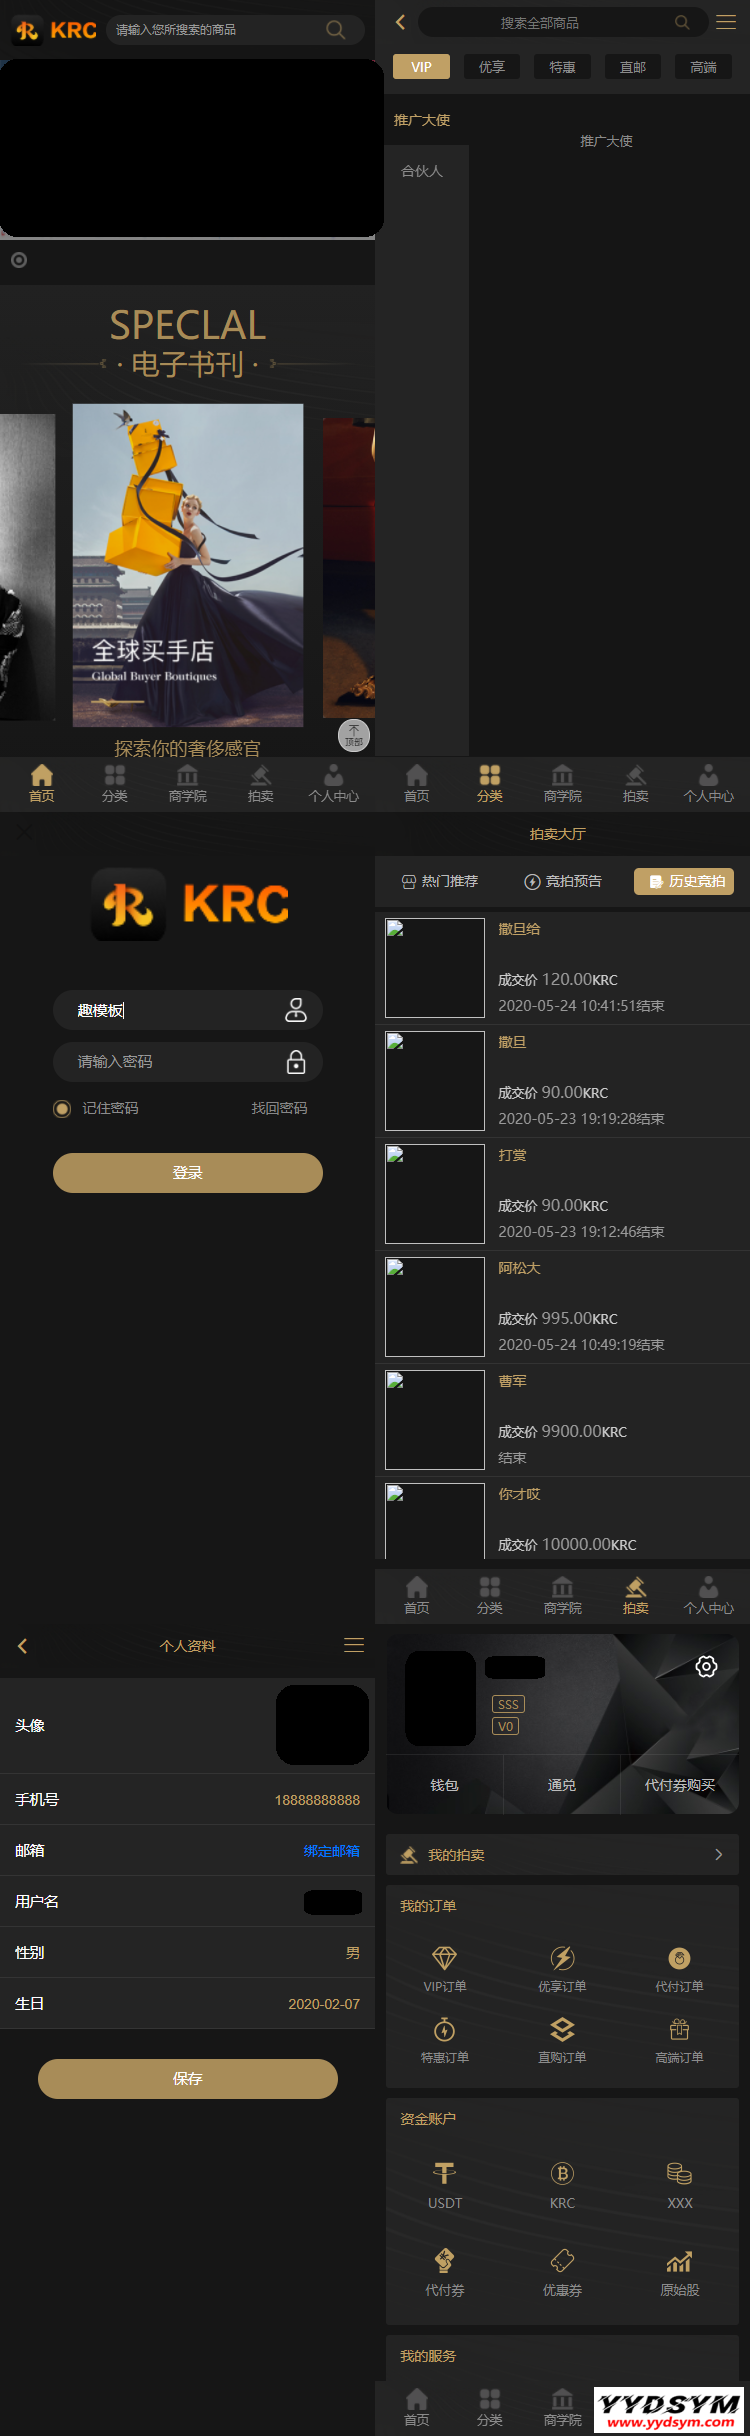 KRC跨境商城系统 拍卖系统 竞拍系统 高端商城 虚拟币支付源码